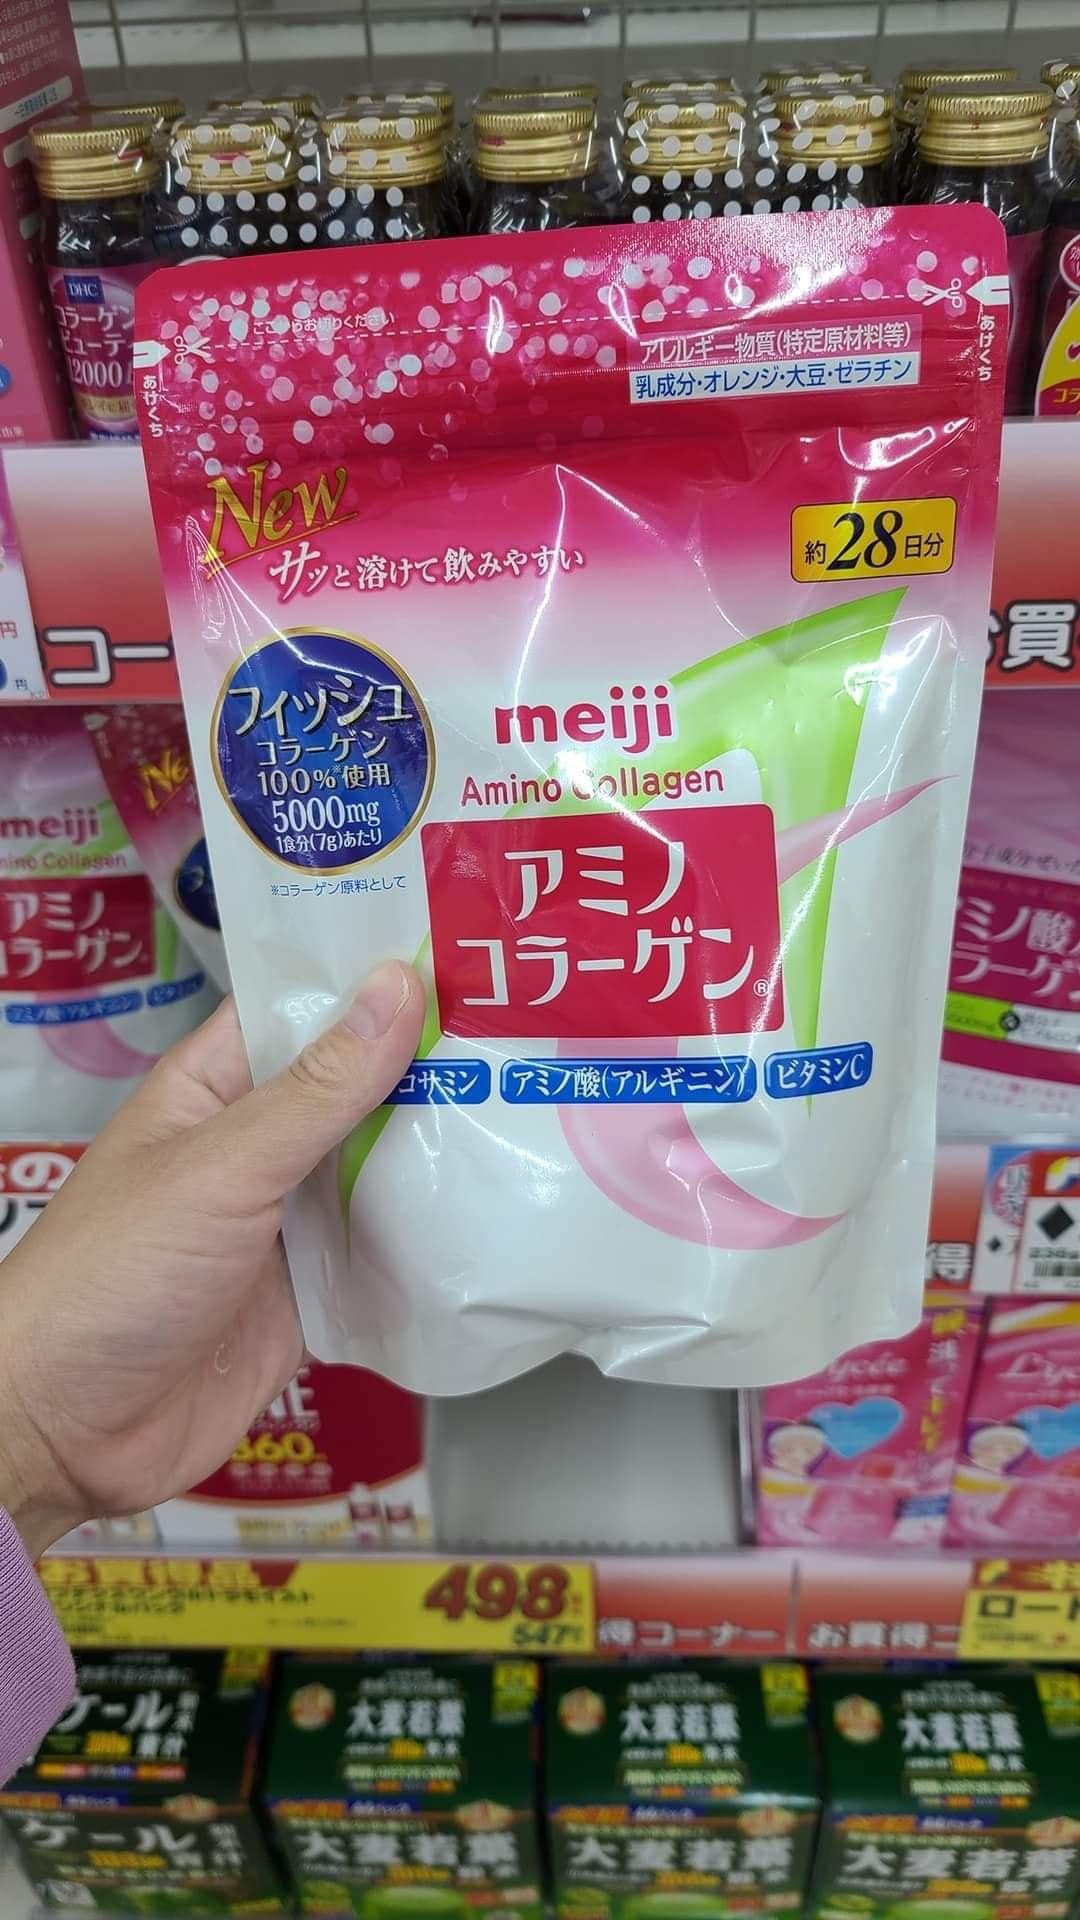 Collagen Meiji Amino Nhat Ban new